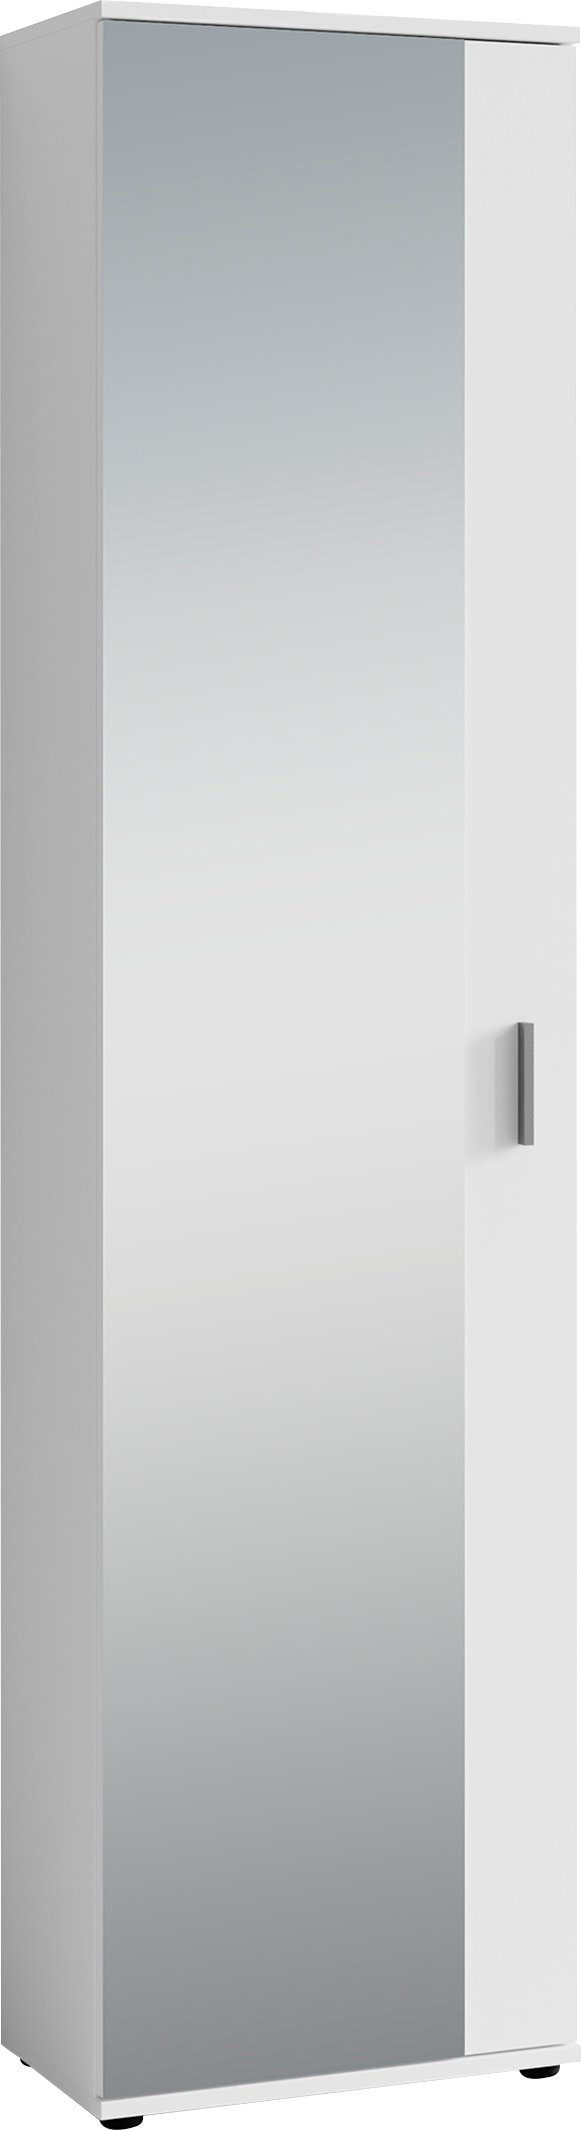 byLIVING Garderobenschrank Jakob mit großem Breite Weiß Spiegel, 49 cm